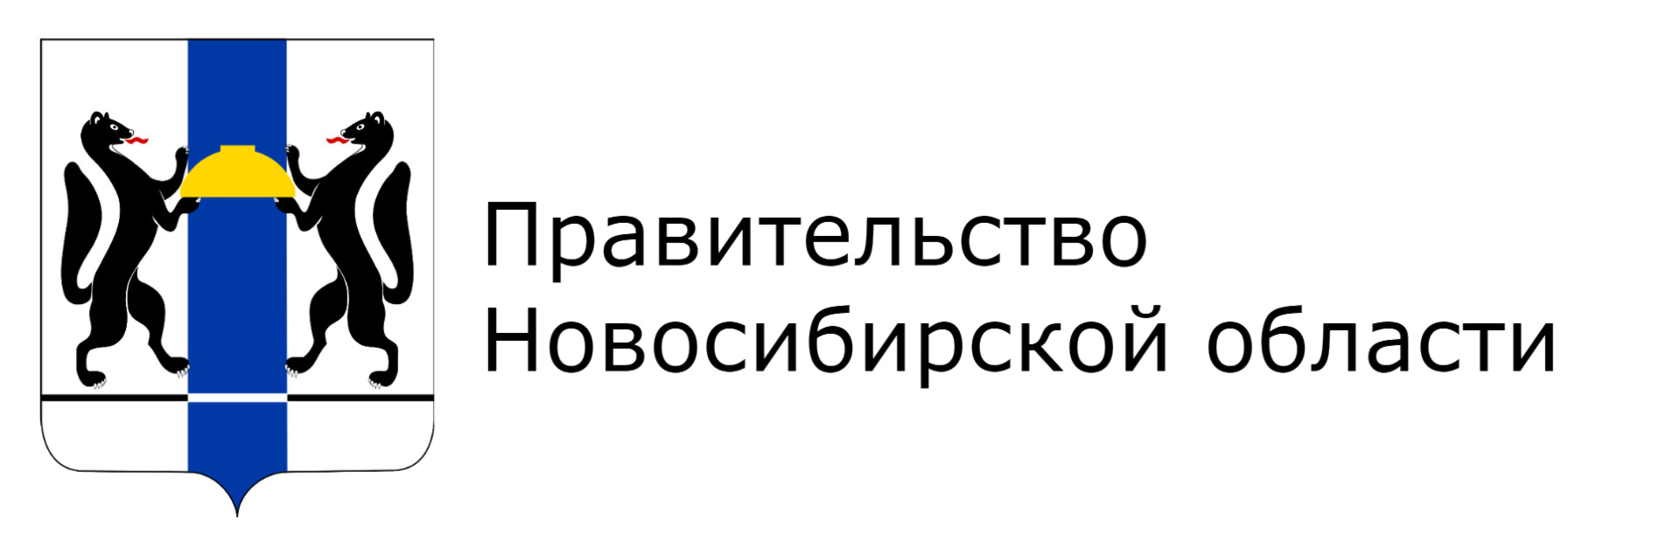 Правительство Новосибирской области герб. Логотип Министерства Новосибирской области. Правительство Новосибирской области лого. Министерство образования Новосибирской области логотип. Сайт никпро новосибирской области